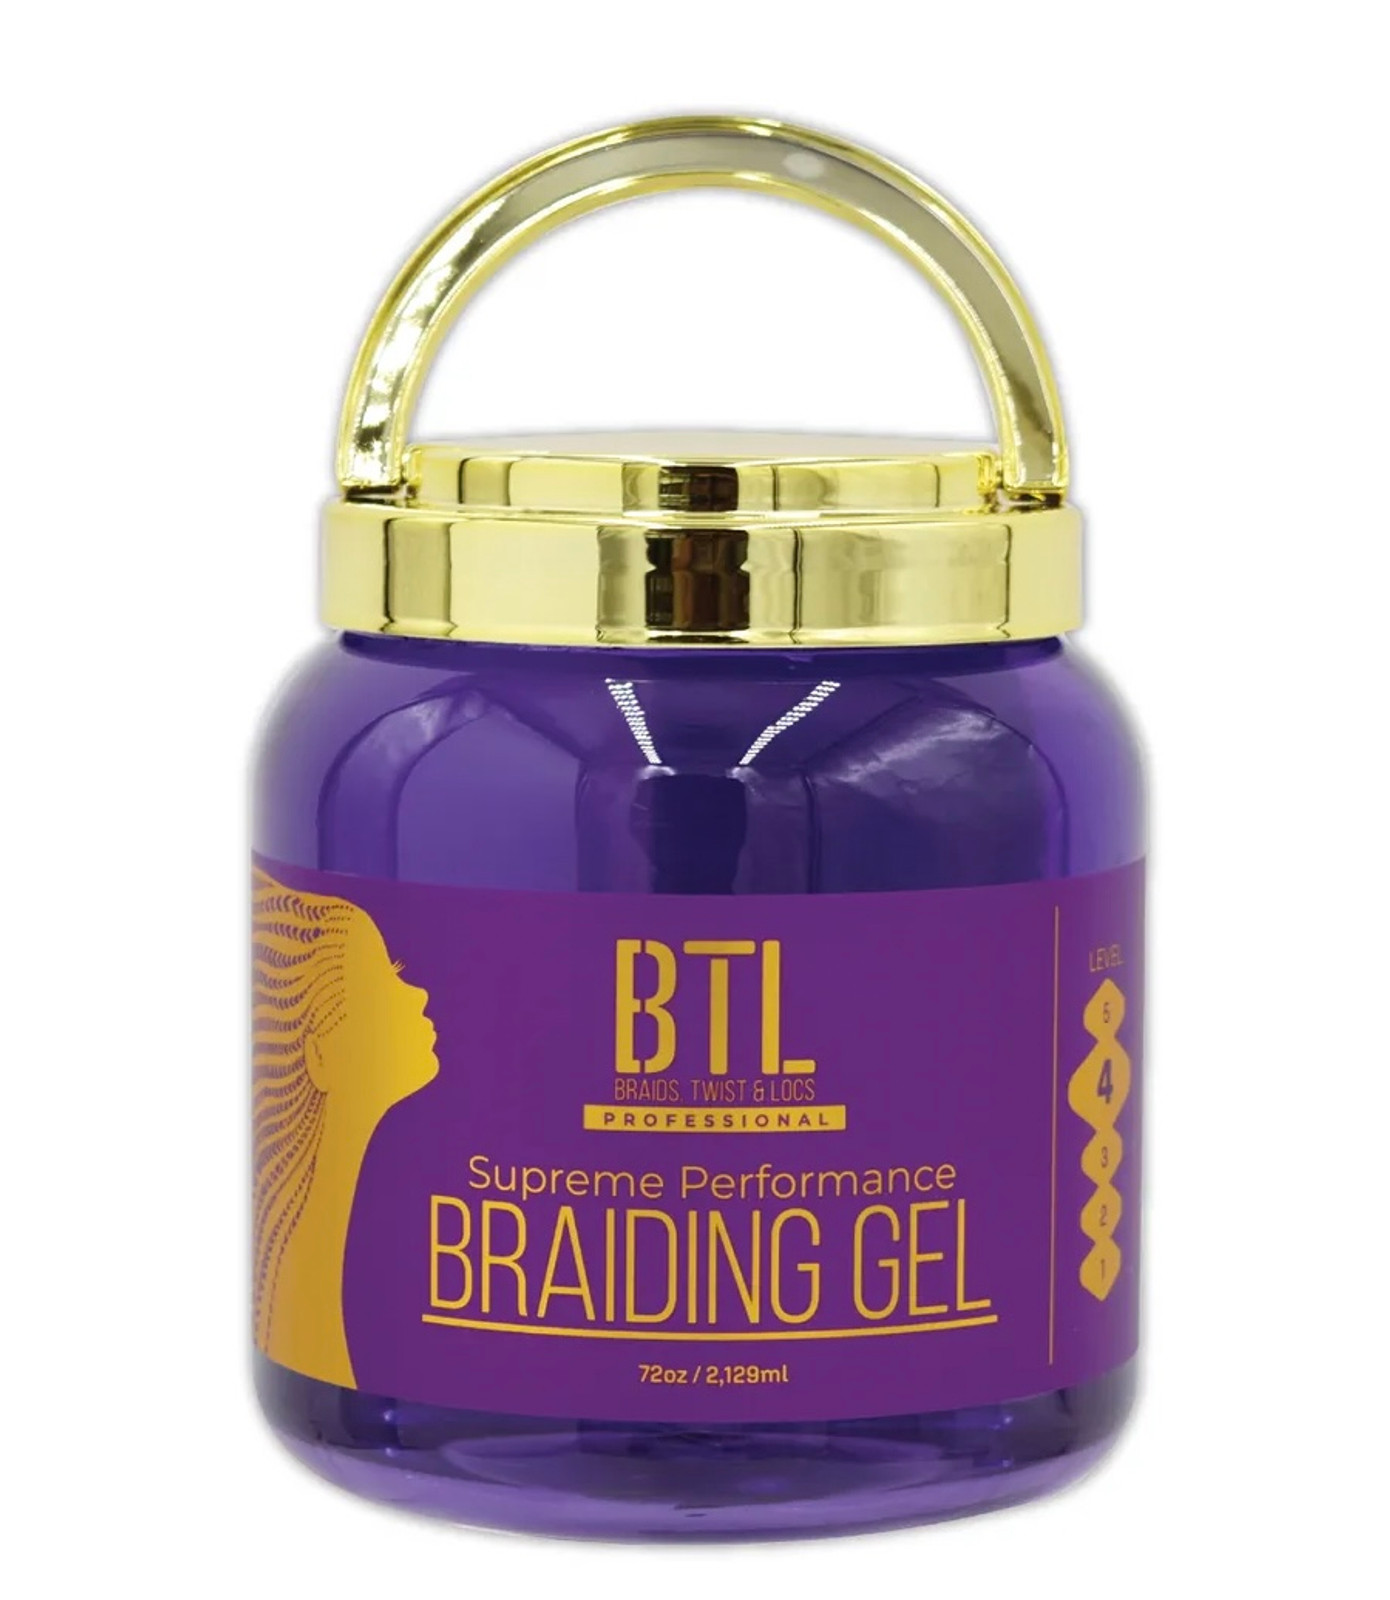 BTL Braid Gel Wrist Band | Yes Queen Beauty Supply